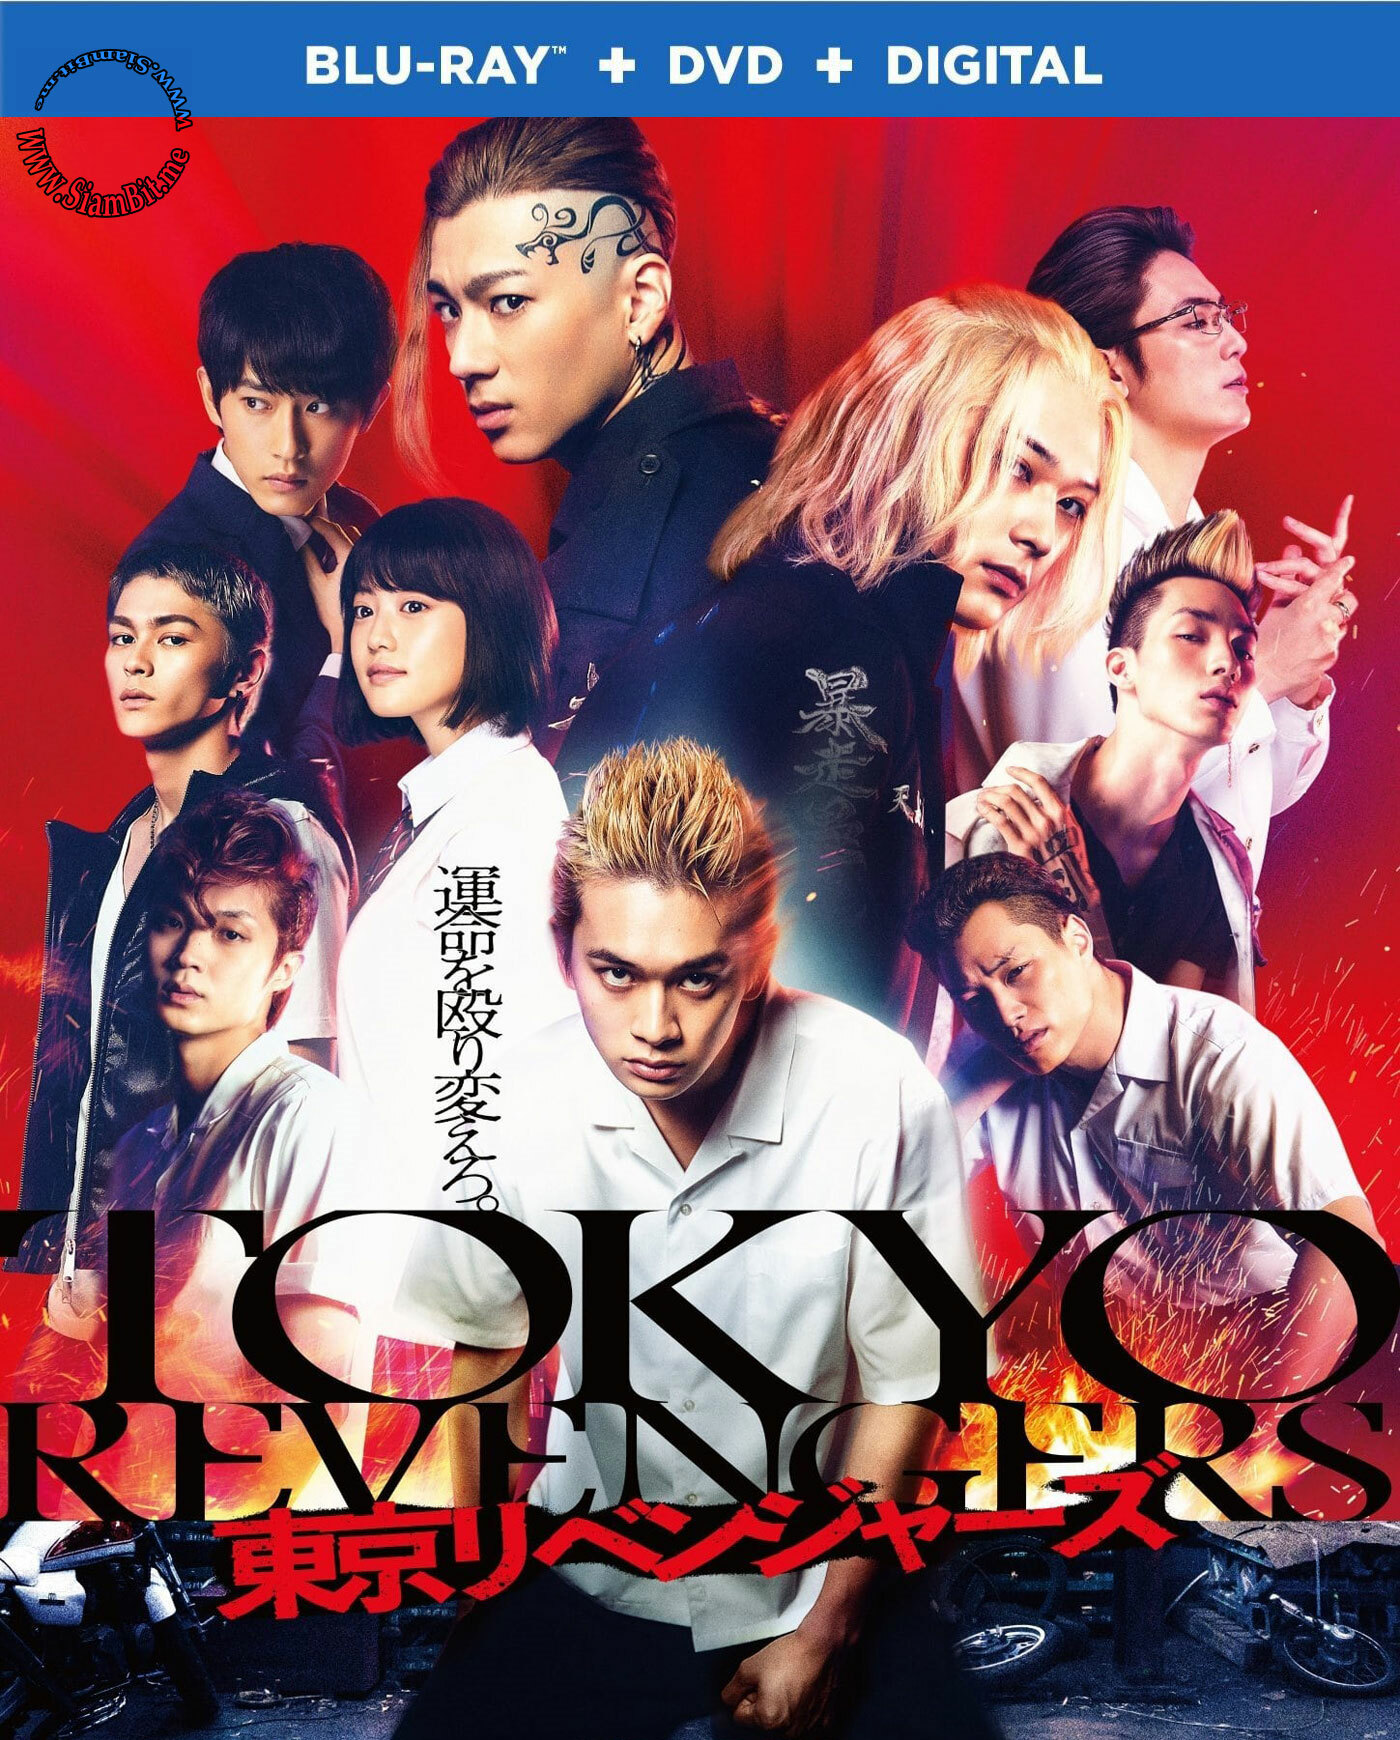 [ญี่ปุ่น]-[* 1080p Super HQ ไฟล์เล็กคุณภาพสูง! *] Tokyo Revengers (2021) : โตเกียว รีเวนเจอร์ส [เสียงอังกฤษ DTS-5.1 + พากย์ไทย 5.1 Master แท้.]  [บรรยาย: ไทย-อังกฤษ Master + ซับ PGS คมชัด]